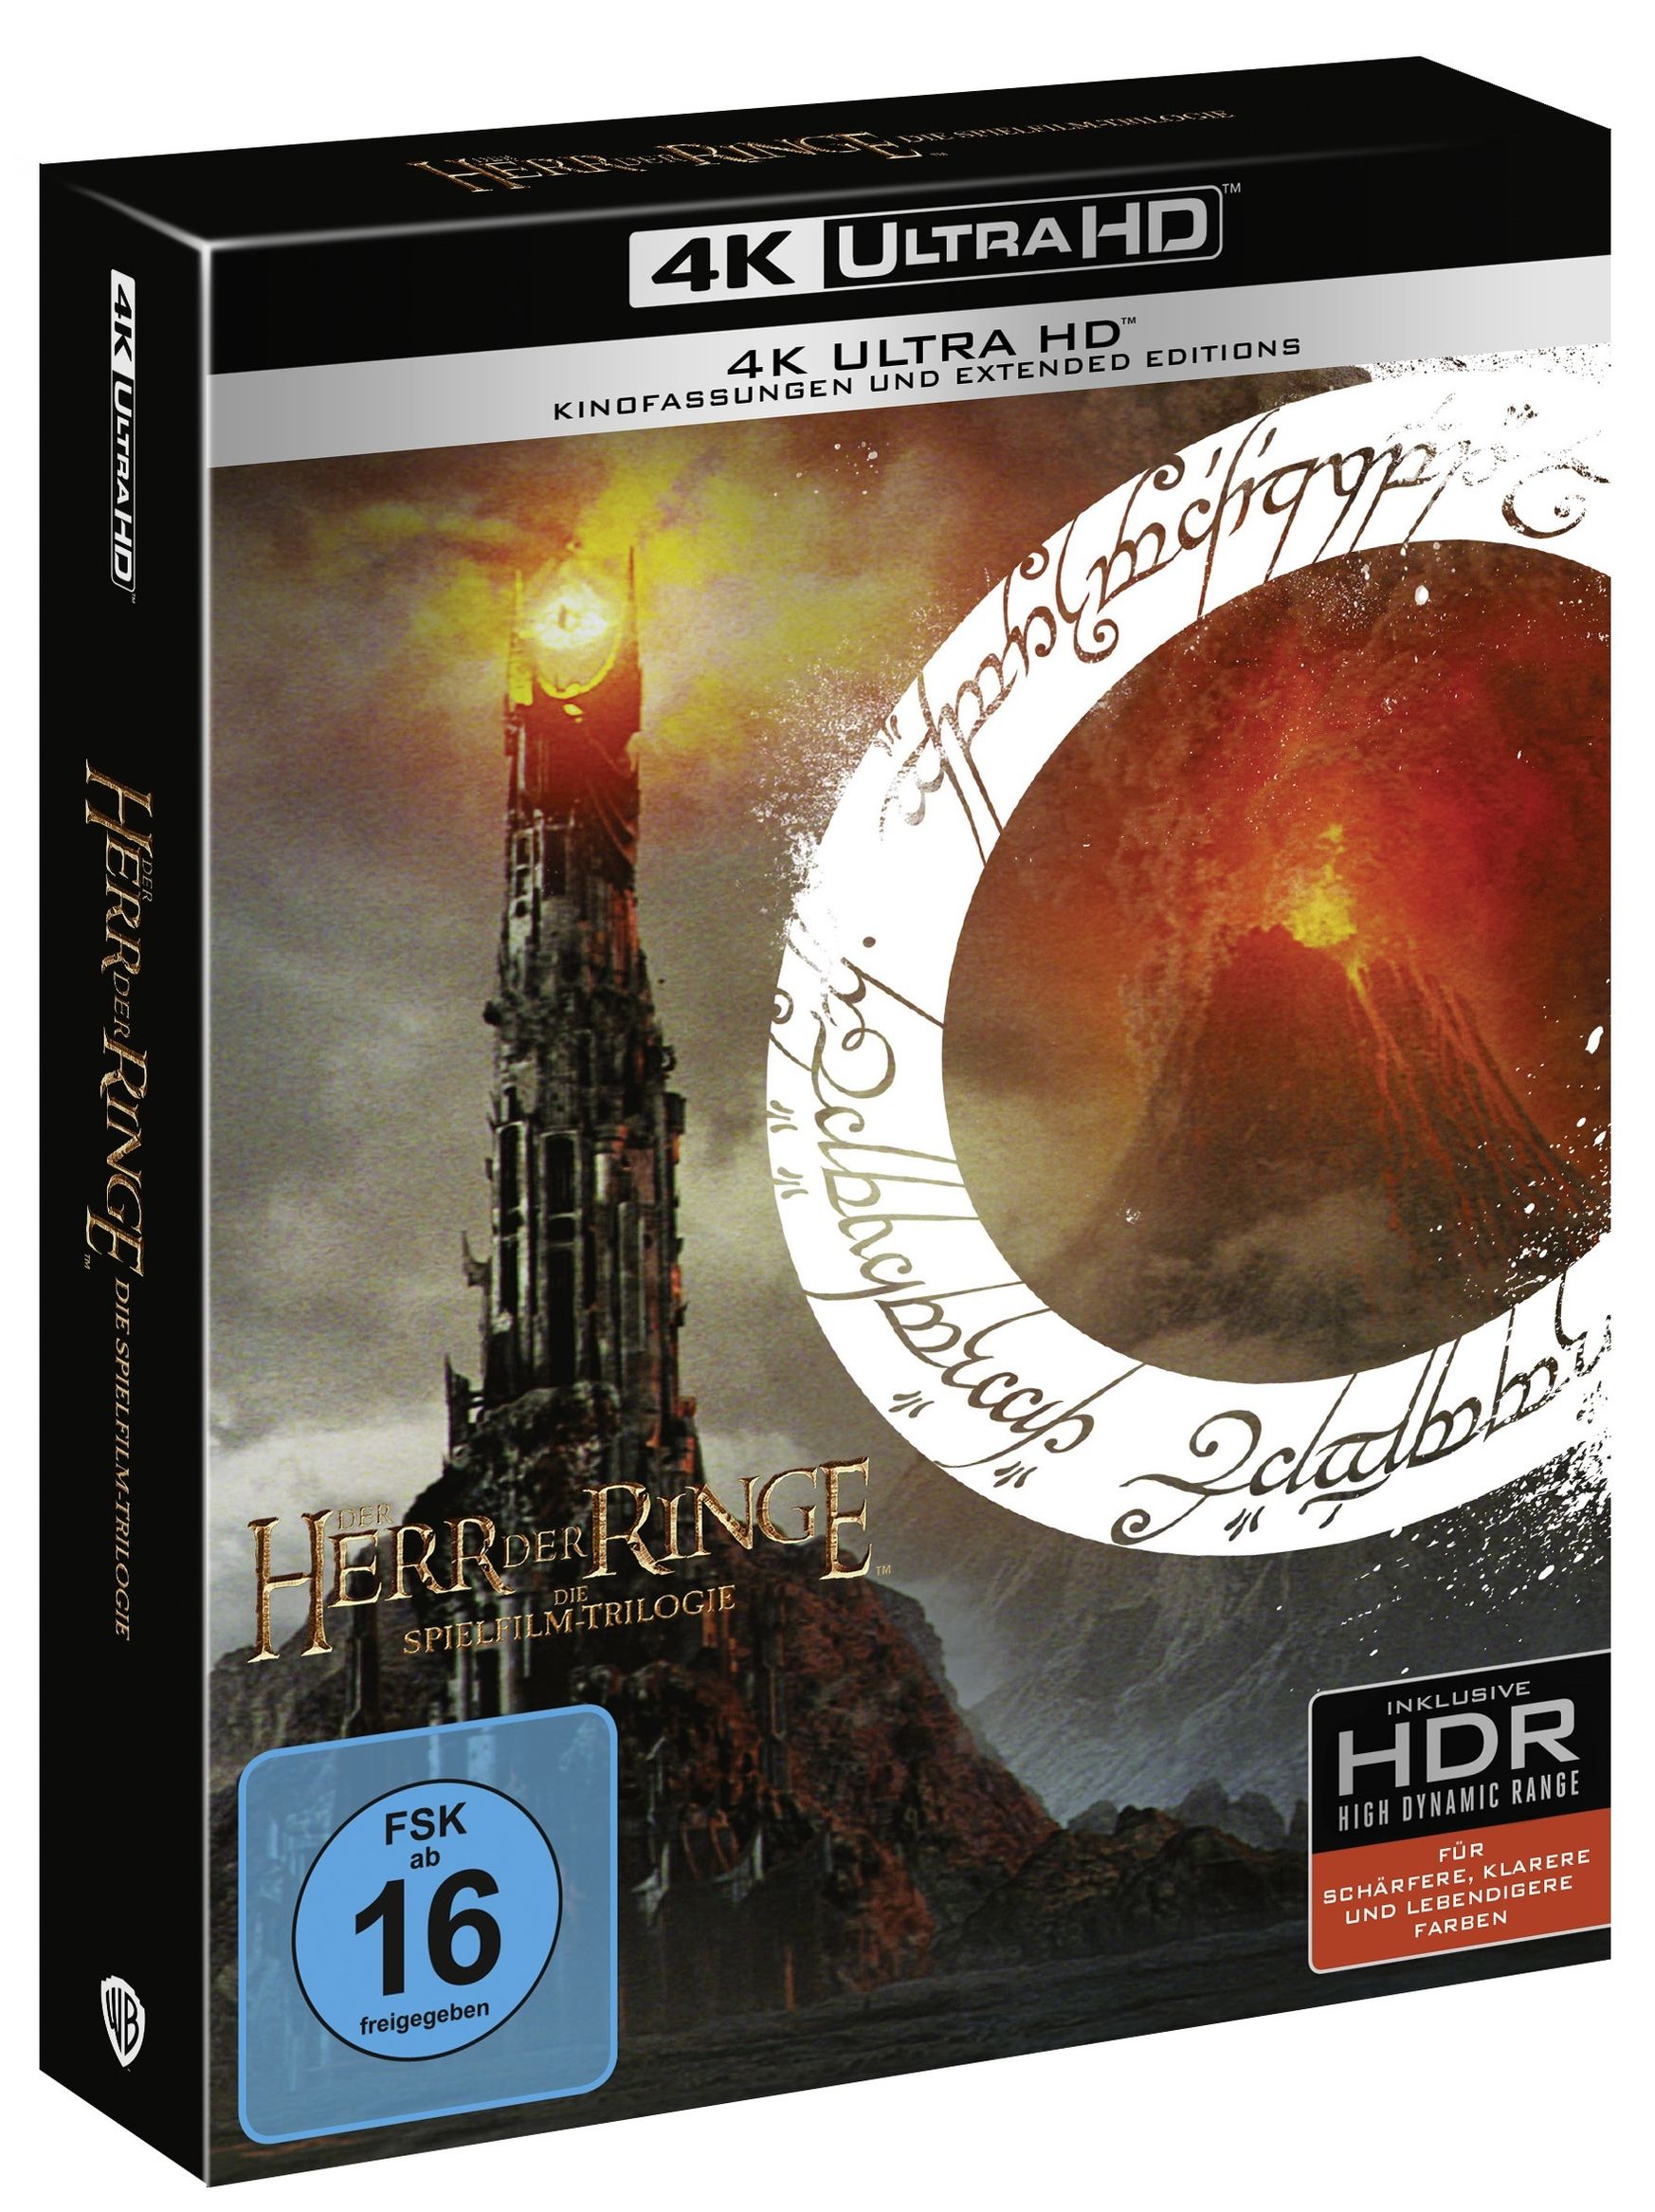 Der Herr der Ringe: Extended Edition Trilogie 4K Ultra HD Film | Weltbild.ch